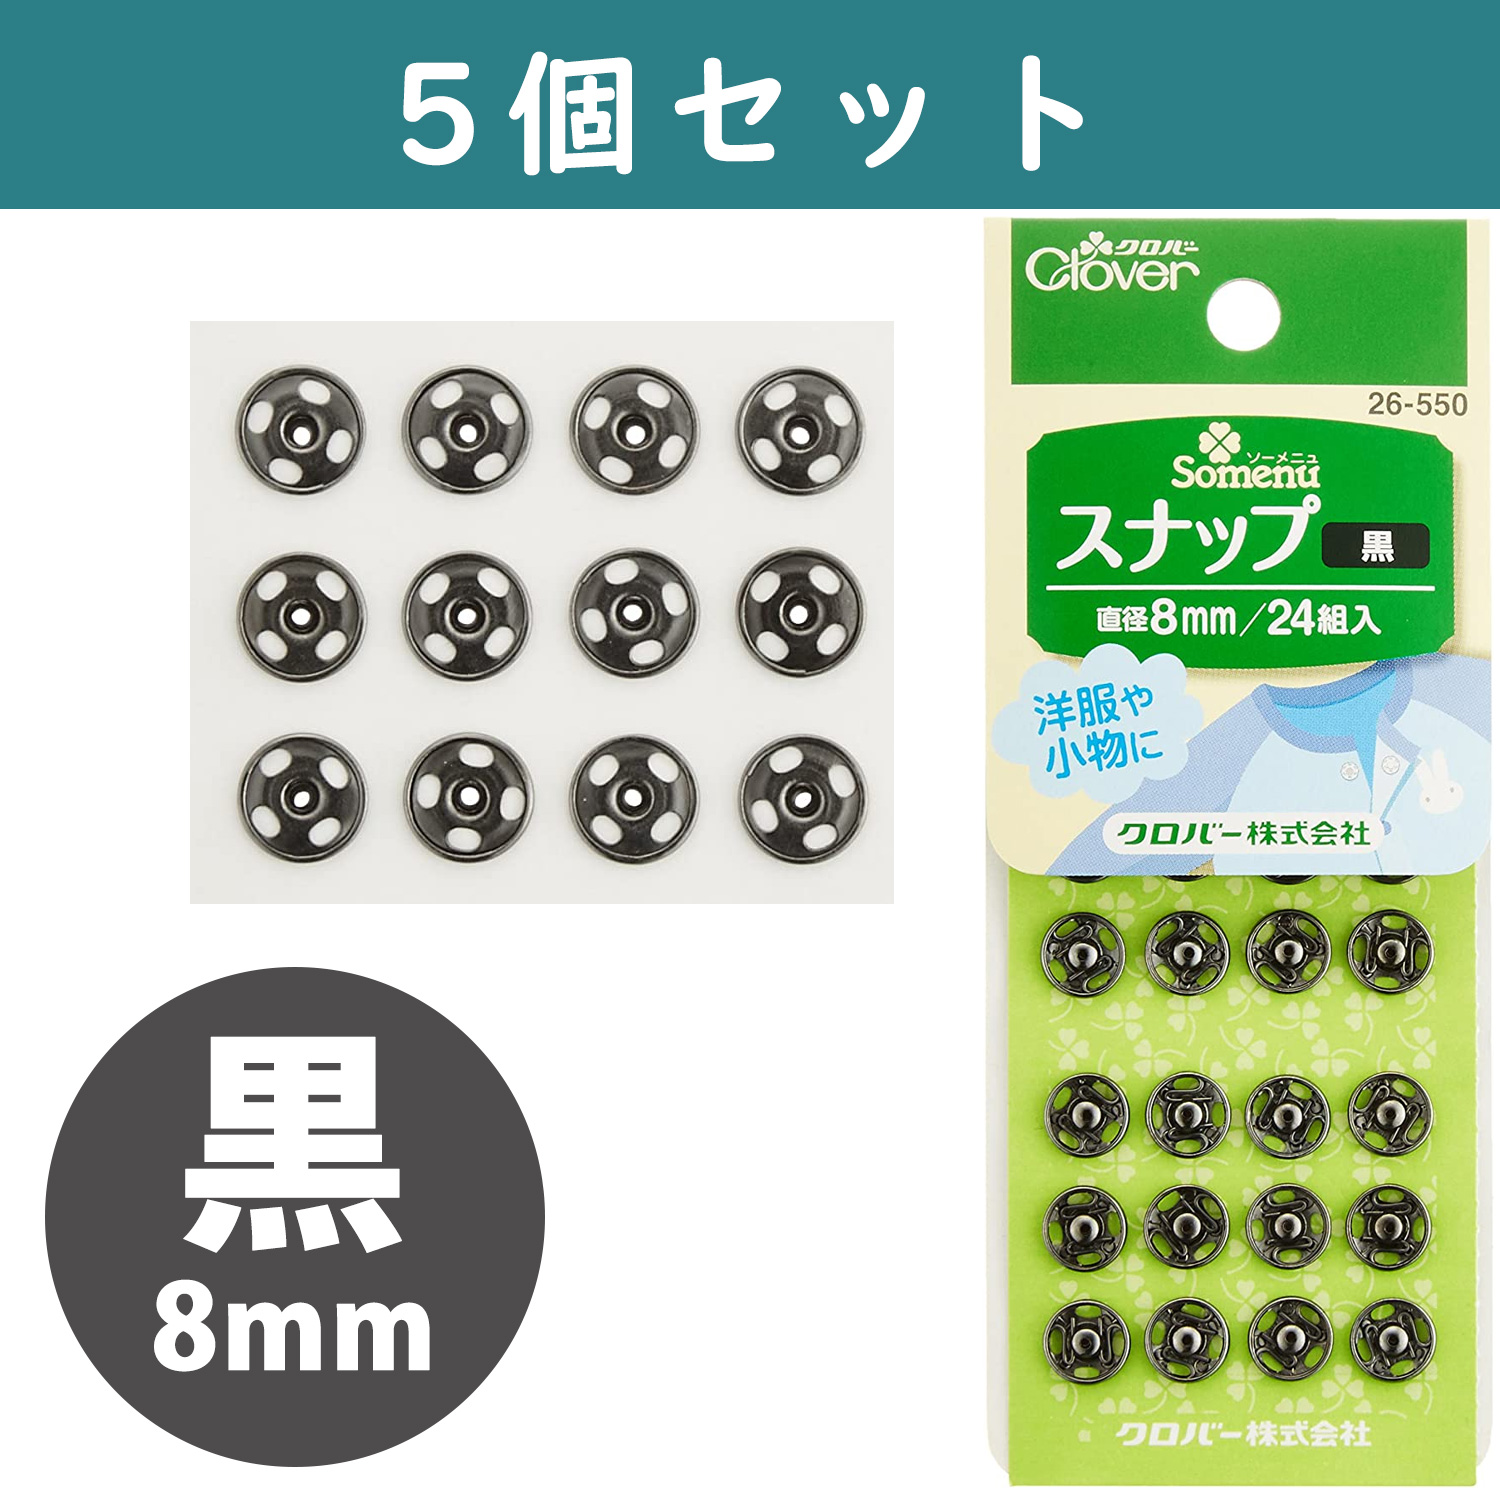 ■【5個】CL26-550-5set スナップ 8mm 24組入り 黒 ×5個　(セット)